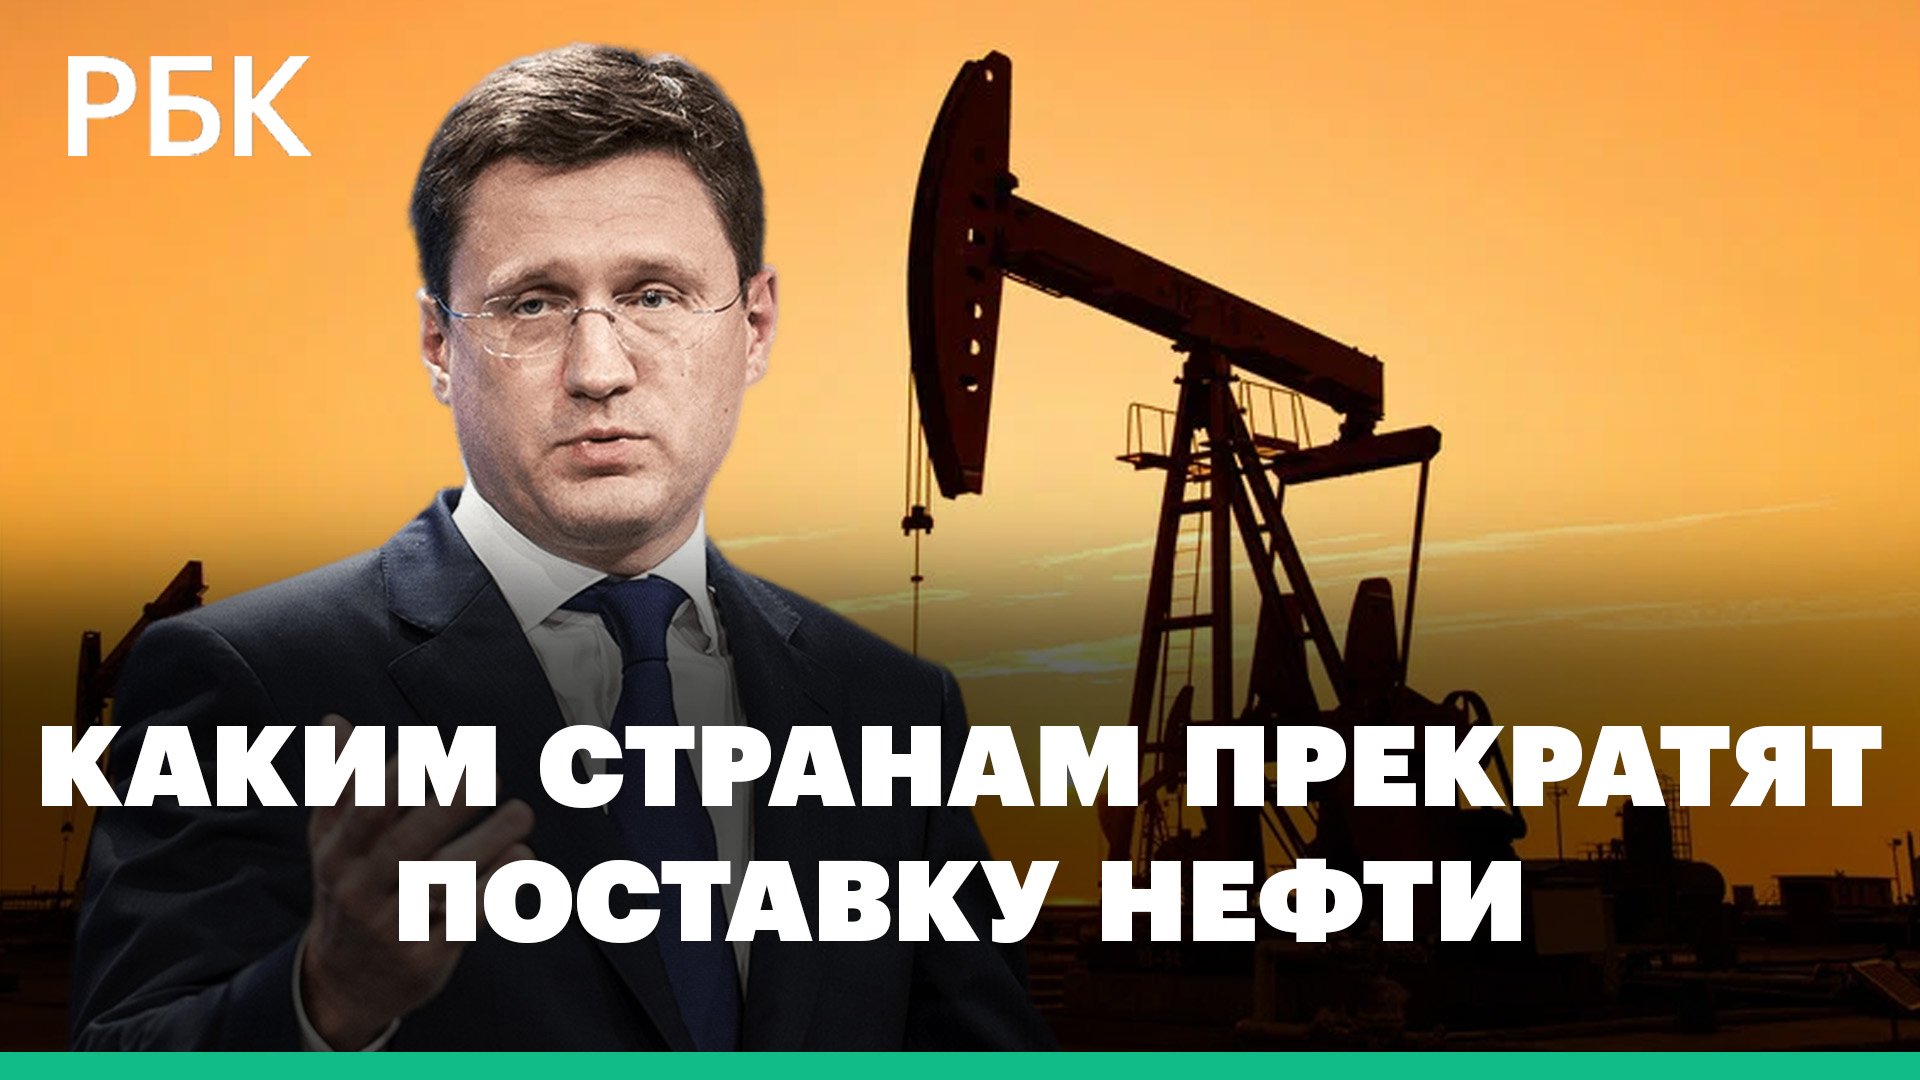 Новак пообещал прекратить поставки нефти тем, кто введет потолок цен